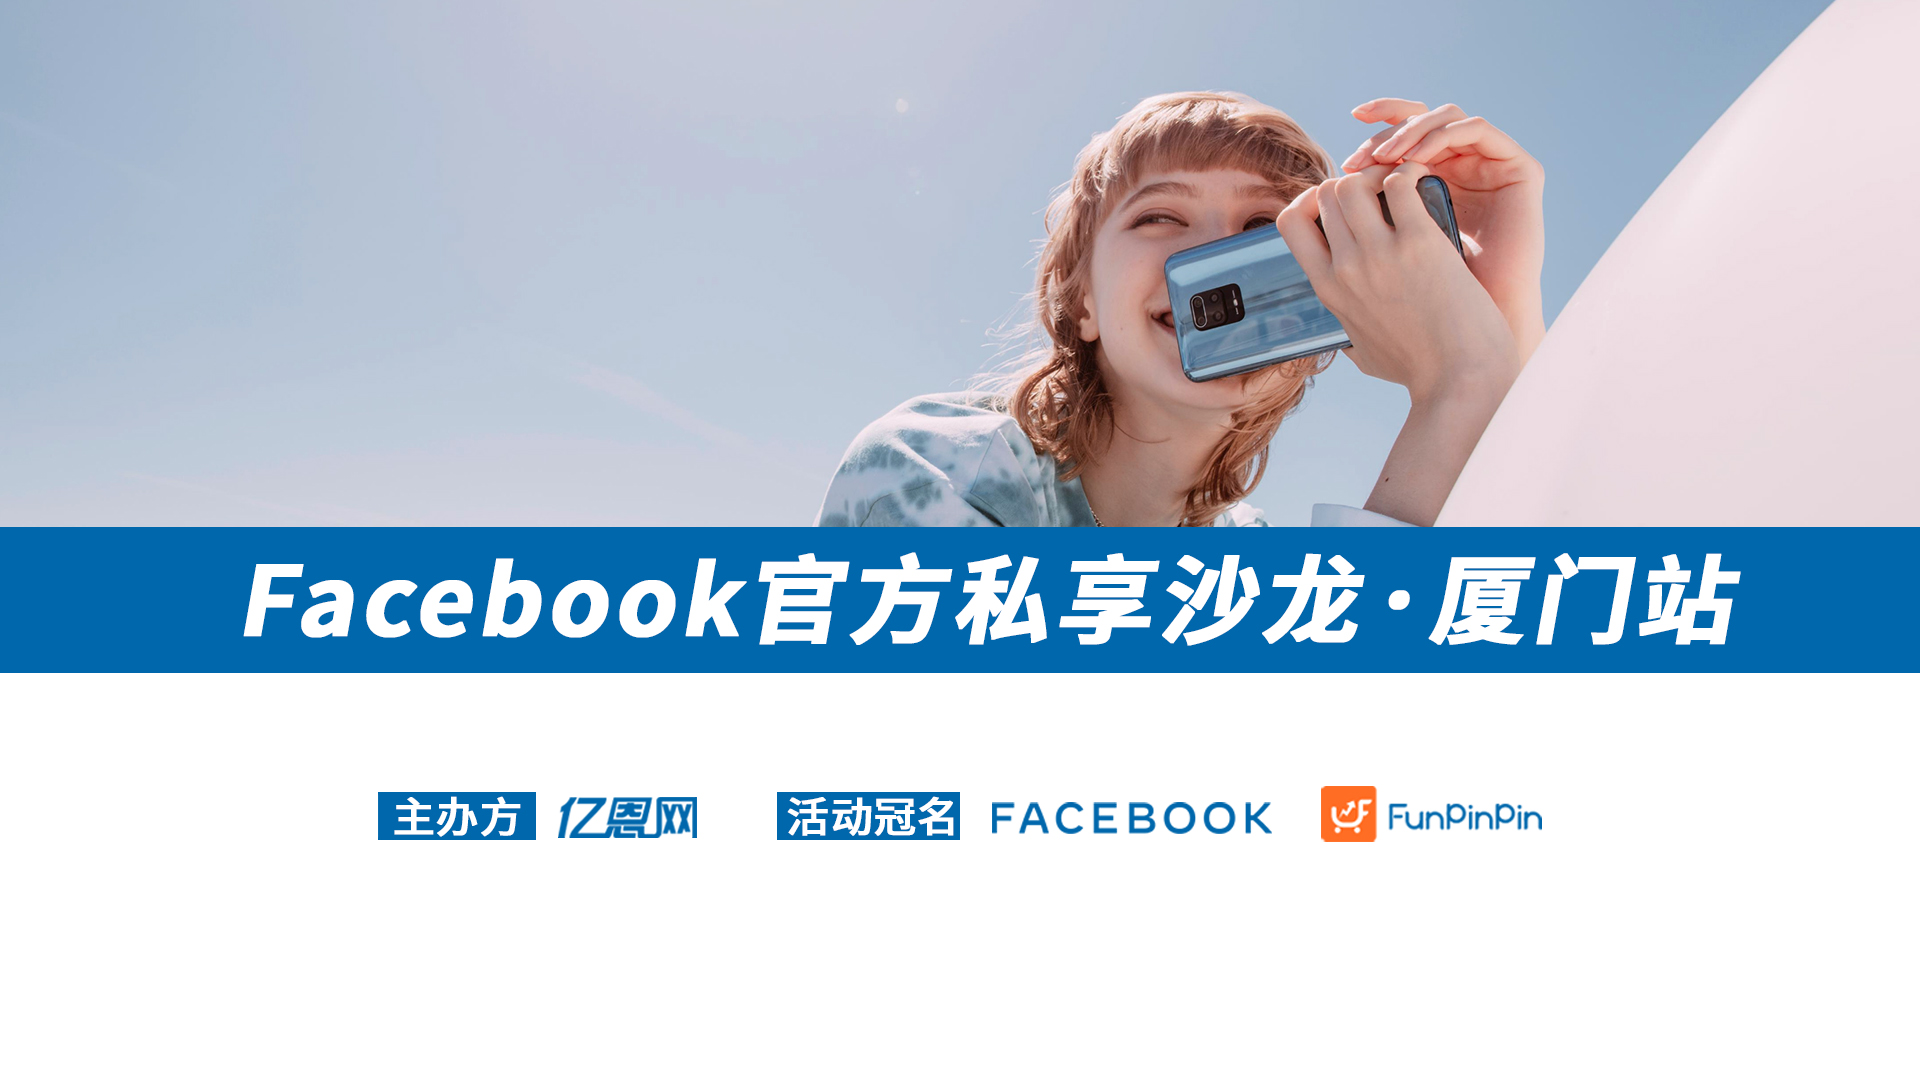 Facebook官方私享沙龙·厦门站